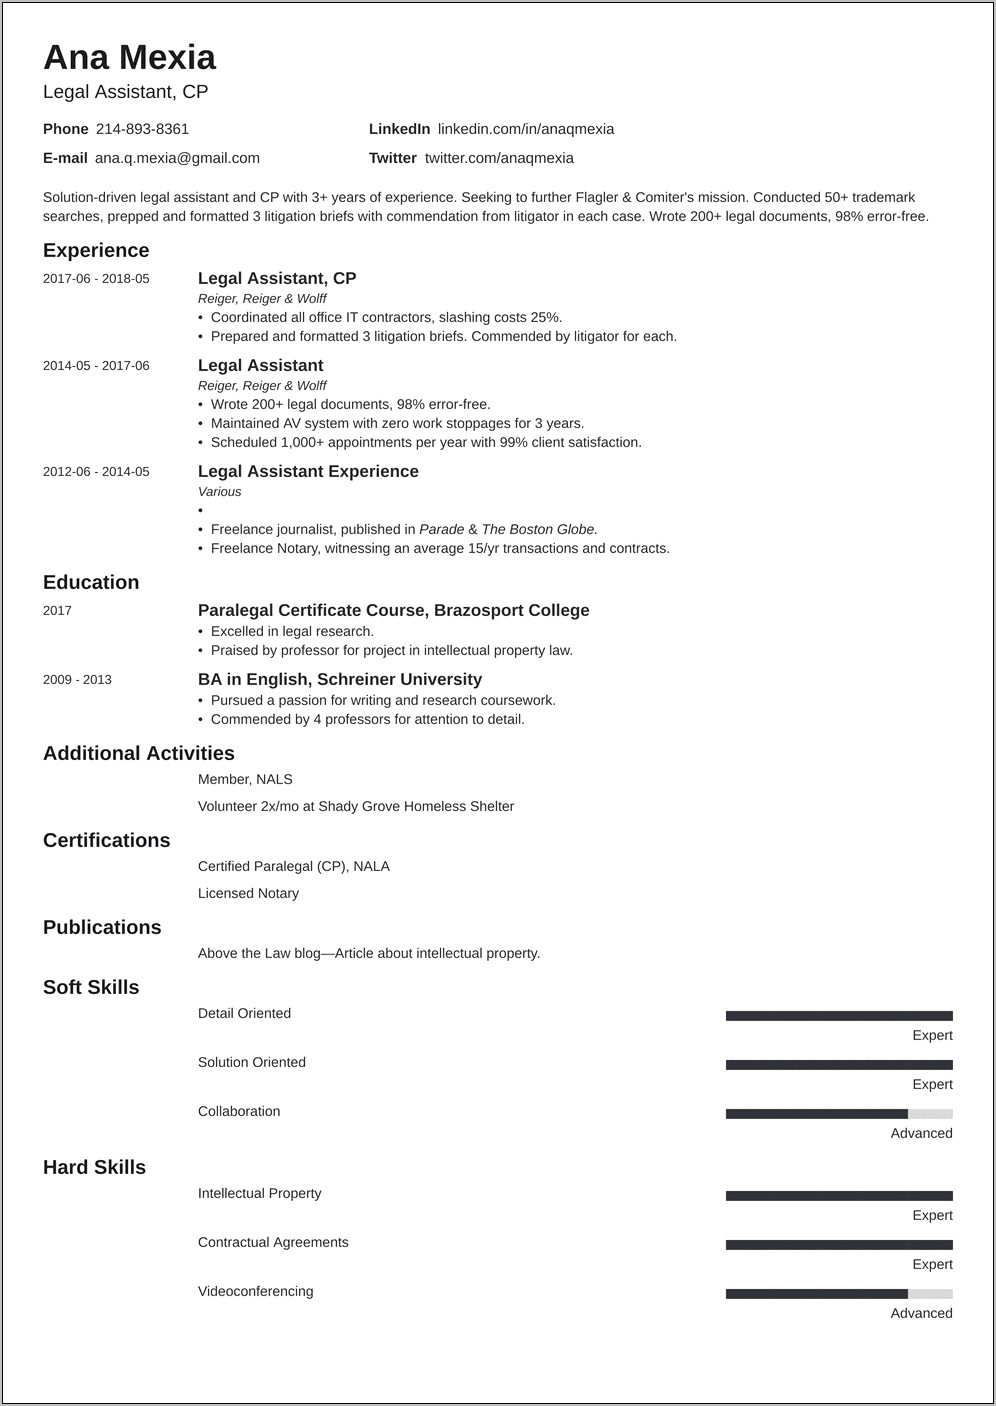 Resume Job Description Legsl Assistant